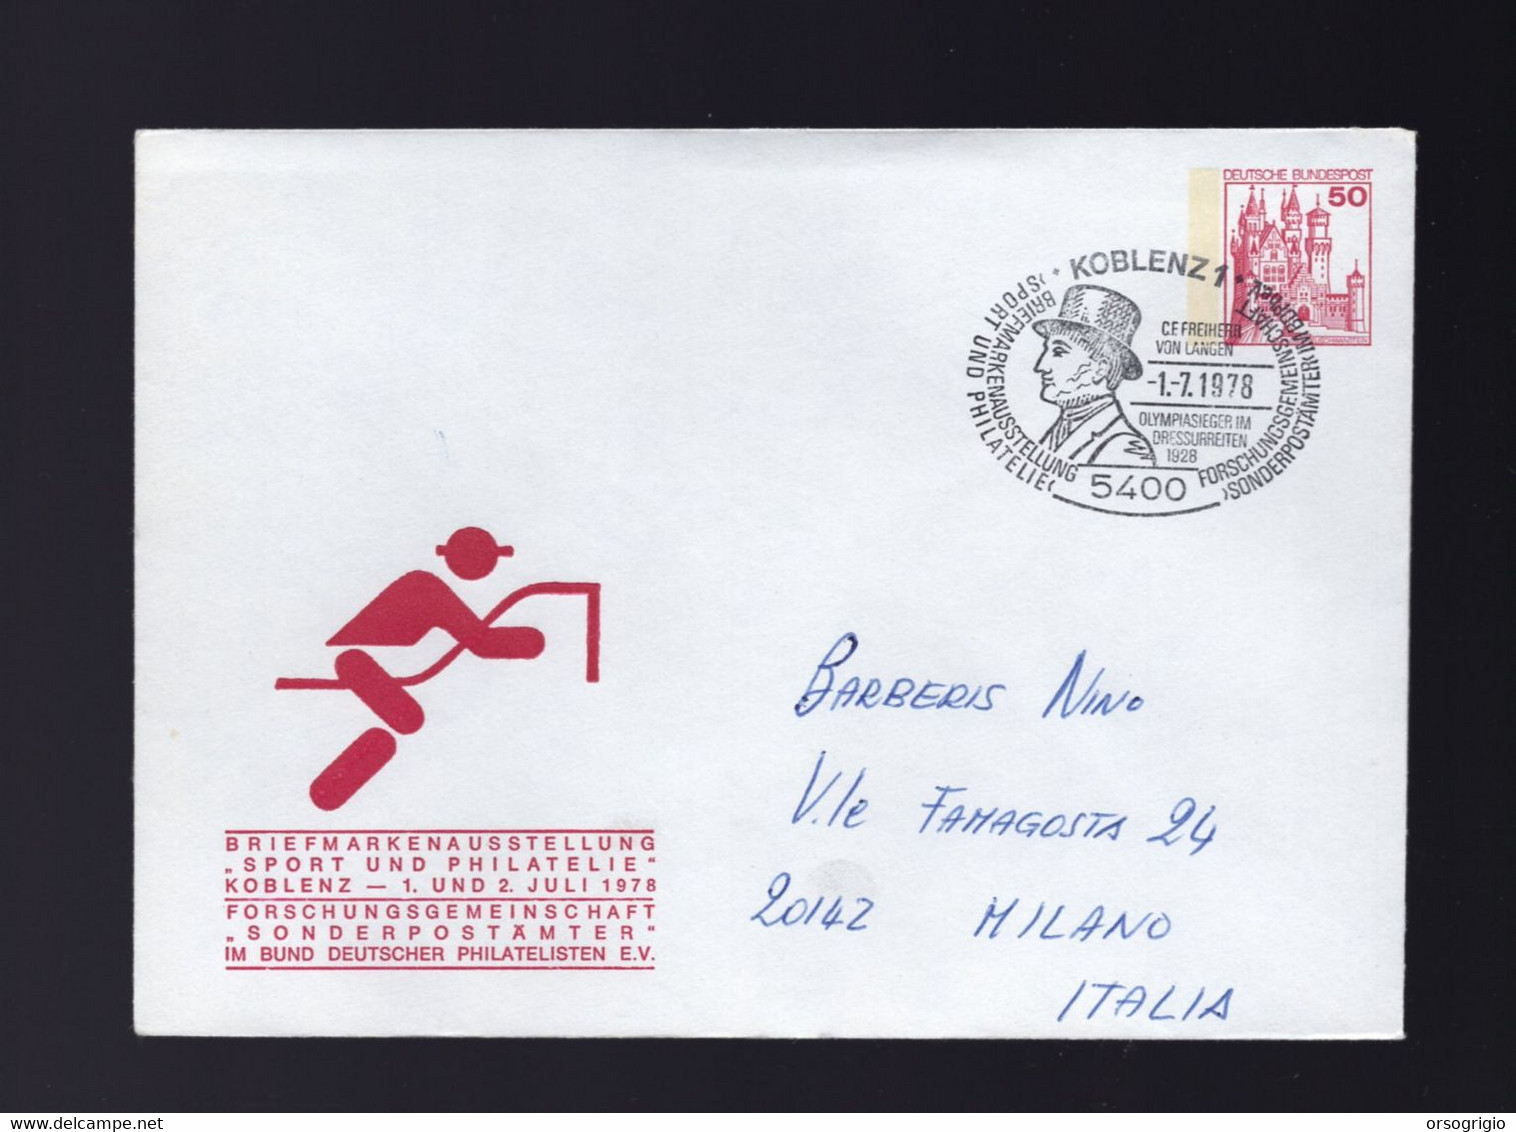 GERMANIA - C. F. FREIHERR VON LANGEN - OLYMPIASIEGER Im DRESSURREITEN - MEDAGLIA D'ORO EQUITAZIONE DRESSAGE - Summer 1928: Amsterdam